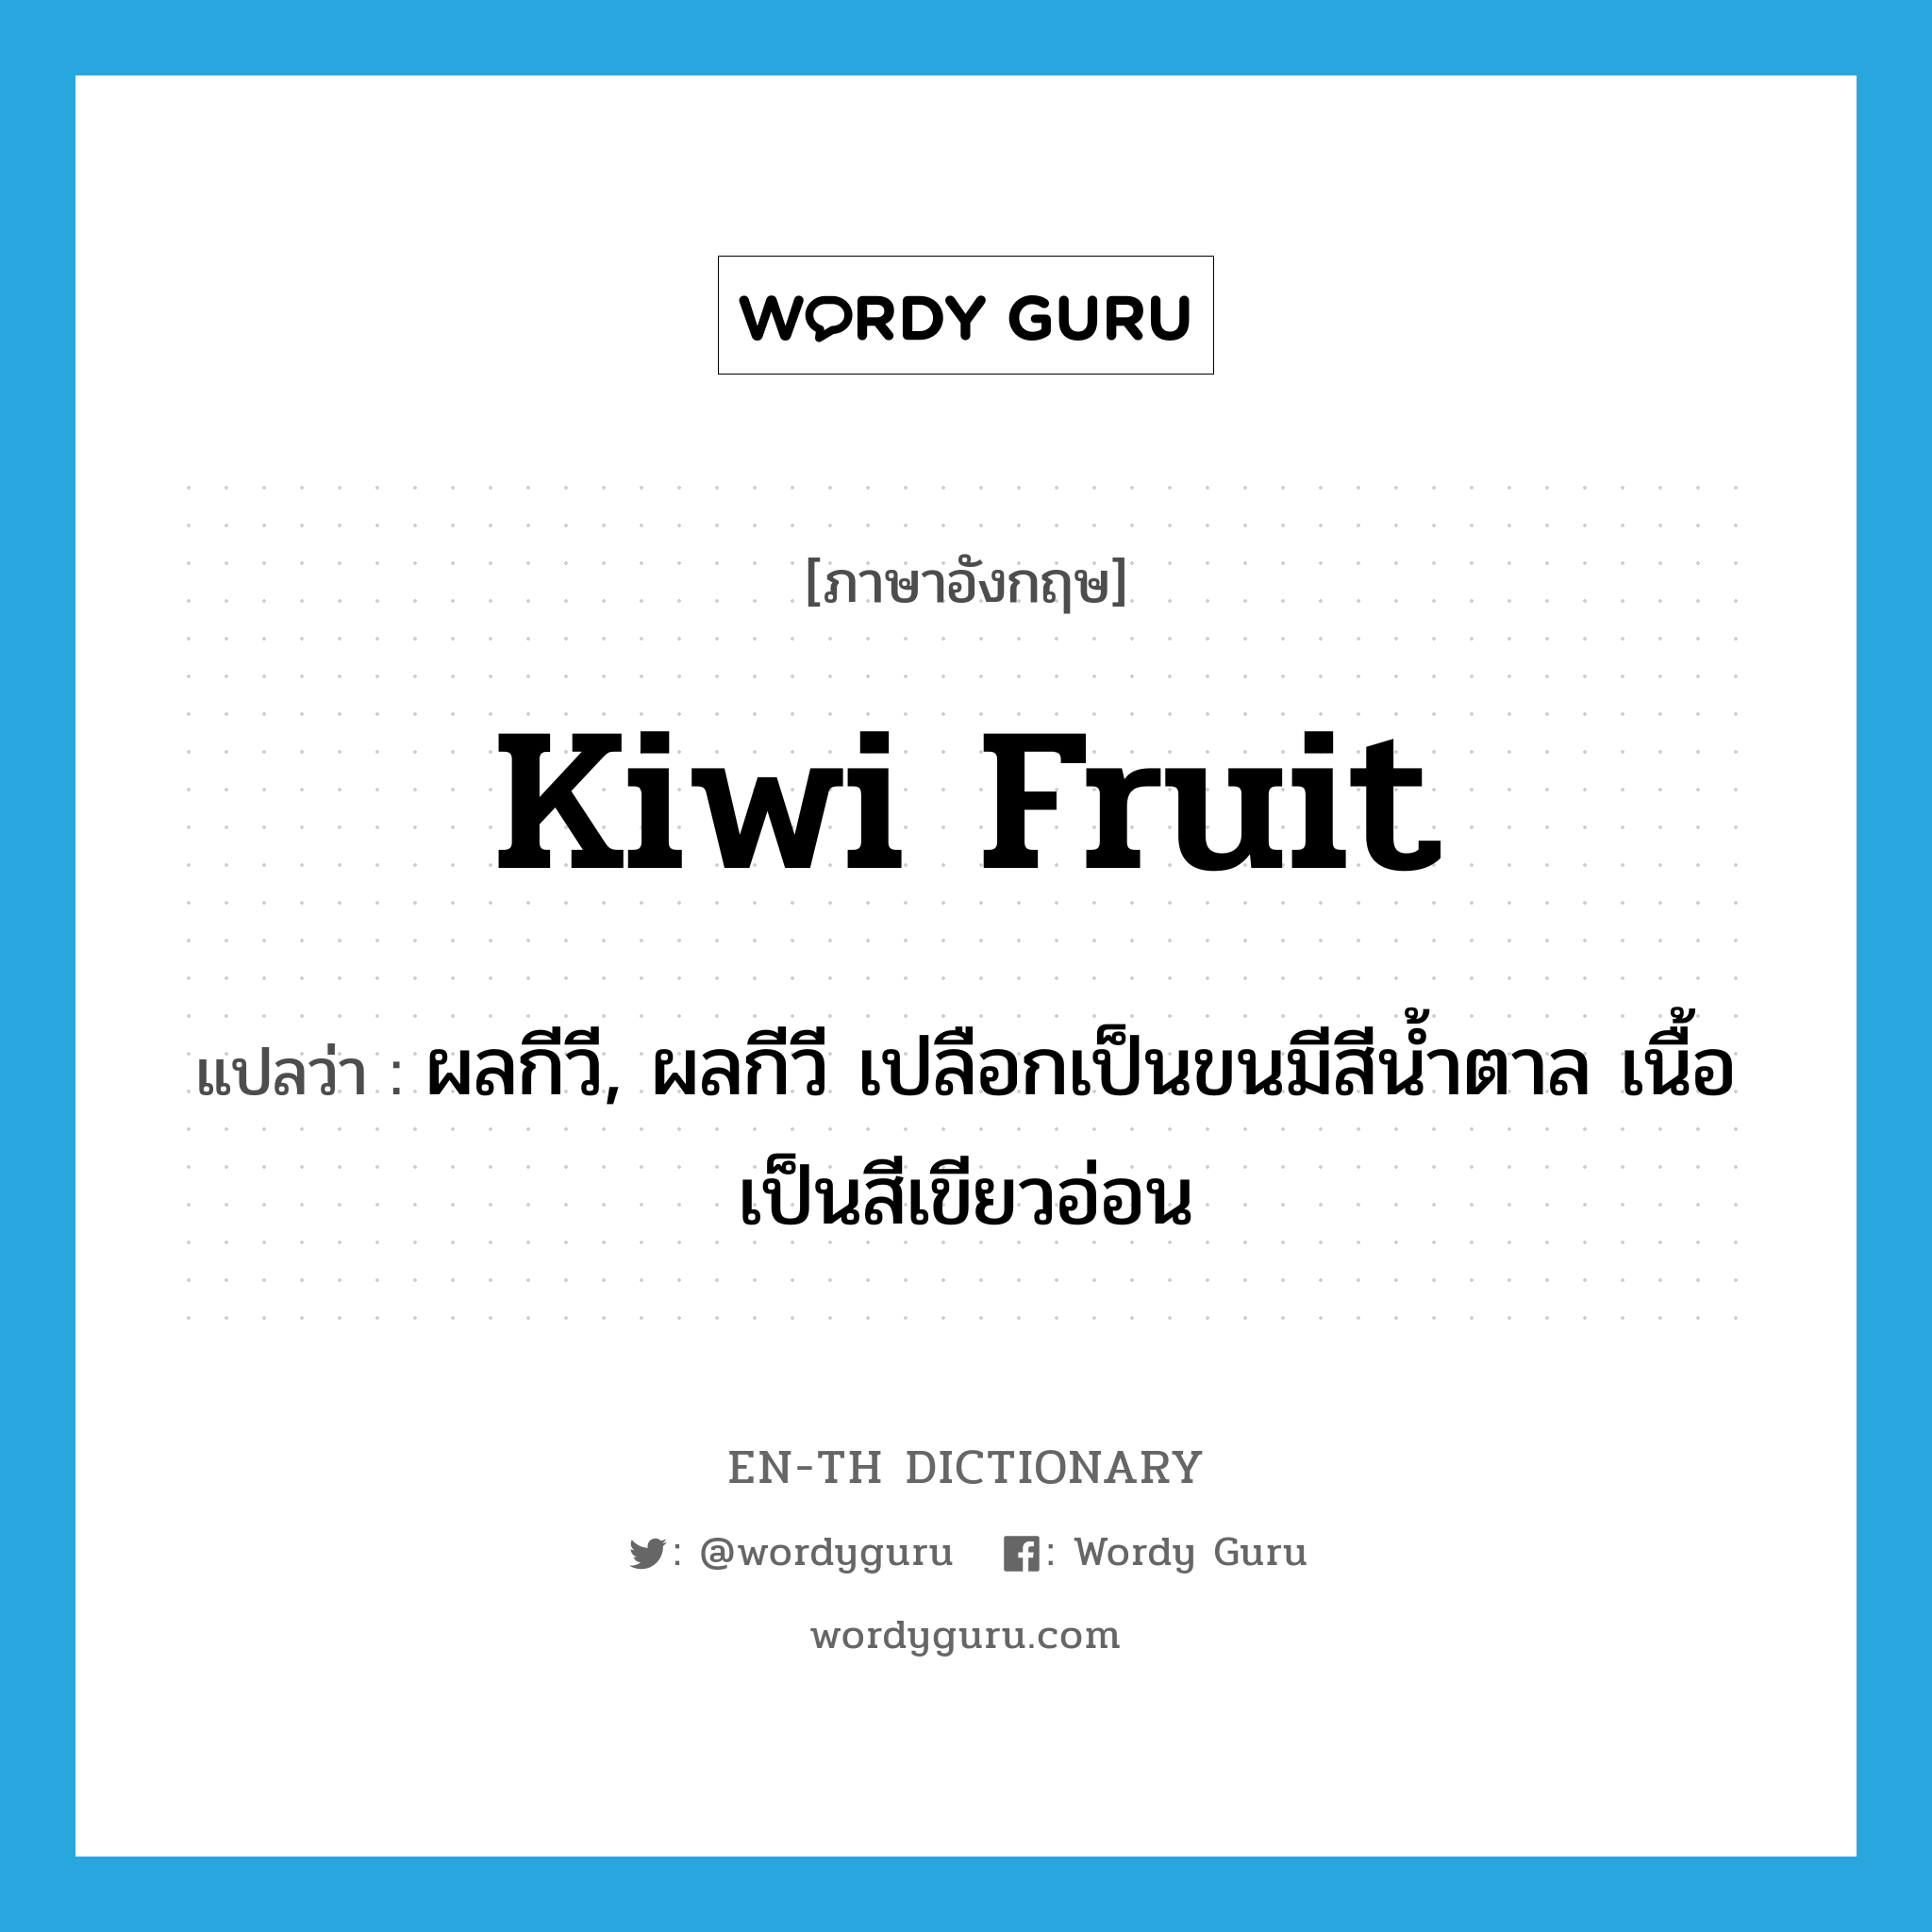 kiwi fruit แปลว่า?, คำศัพท์ภาษาอังกฤษ kiwi fruit แปลว่า ผลกีวี, ผลกีวี เปลือกเป็นขนมีสีน้ำตาล เนื้อเป็นสีเขียวอ่อน ประเภท N หมวด N